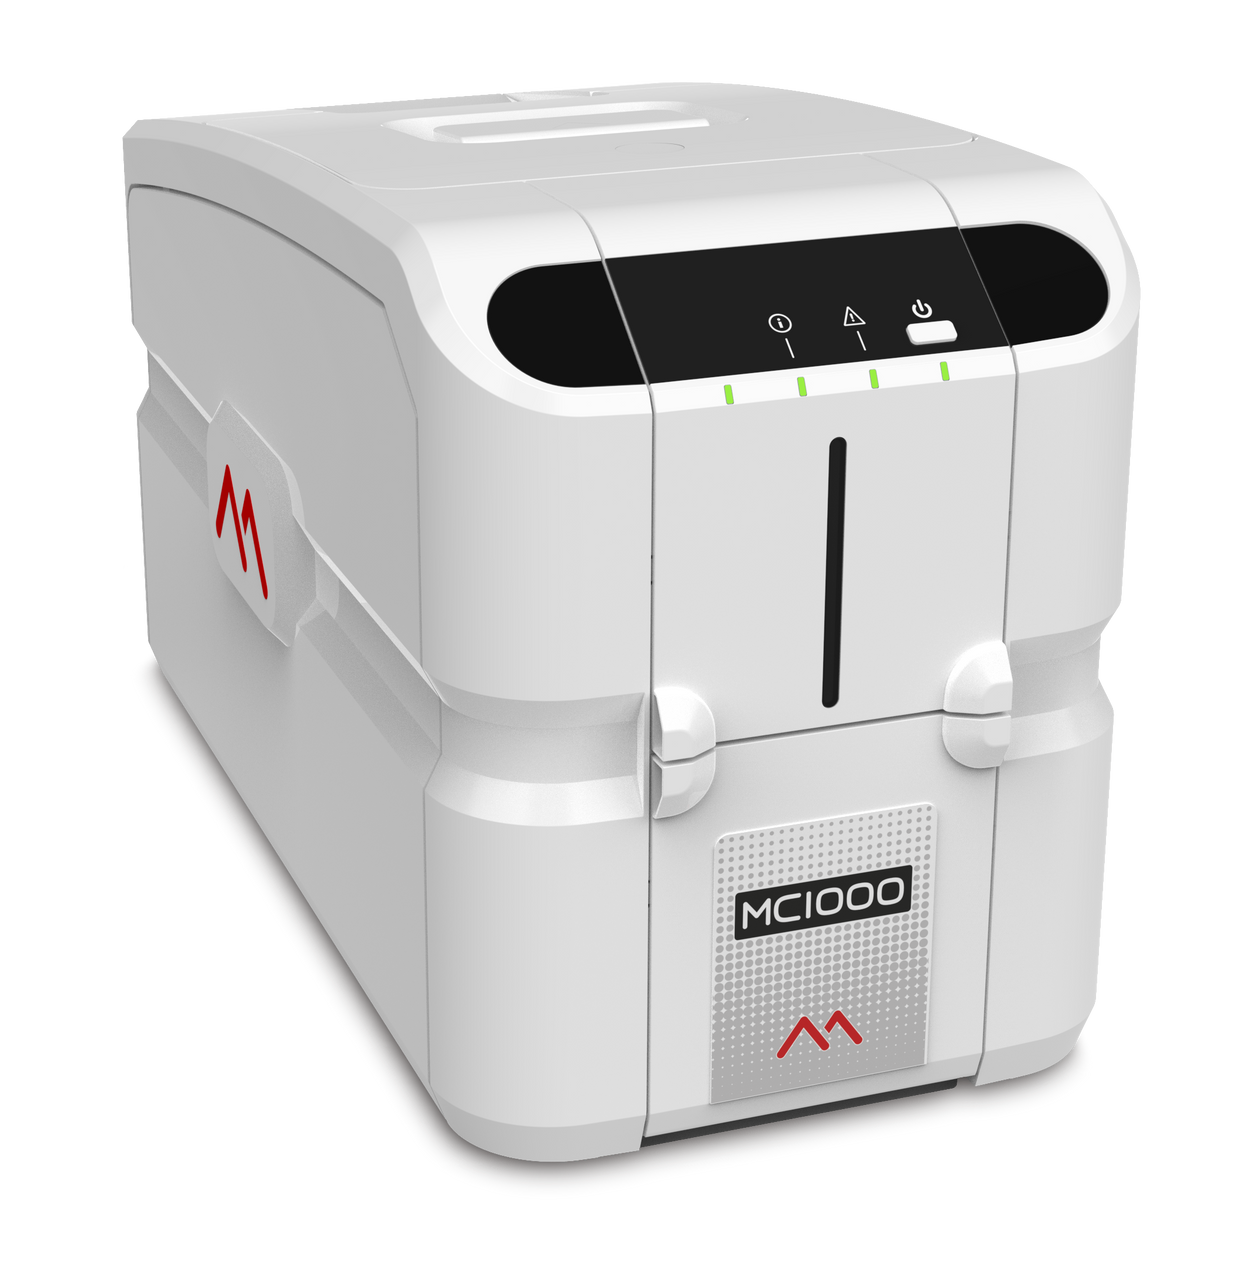 Matica PR05300001 MC1000 Simplex ID Card Printer